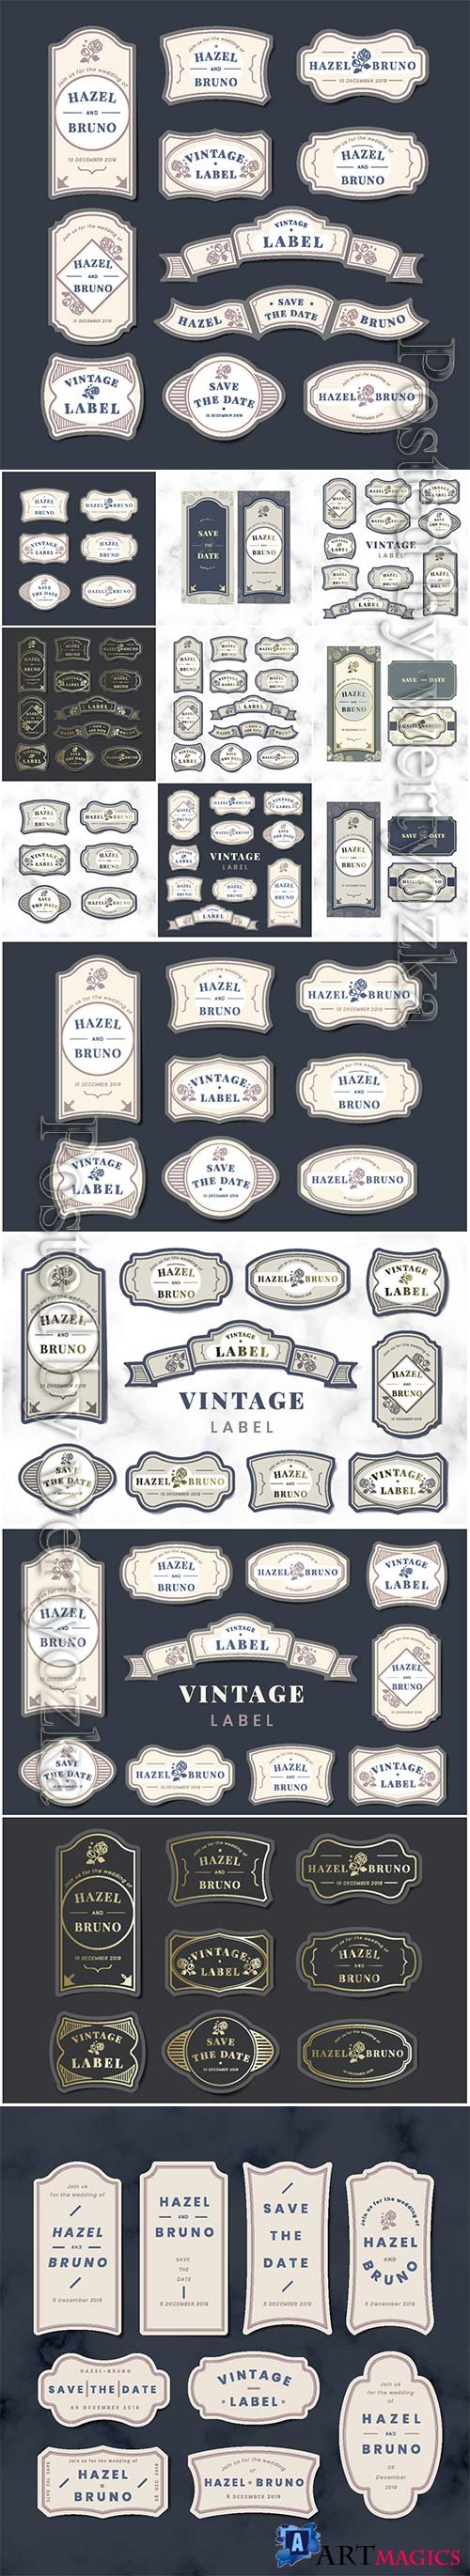 Vintage label vector set